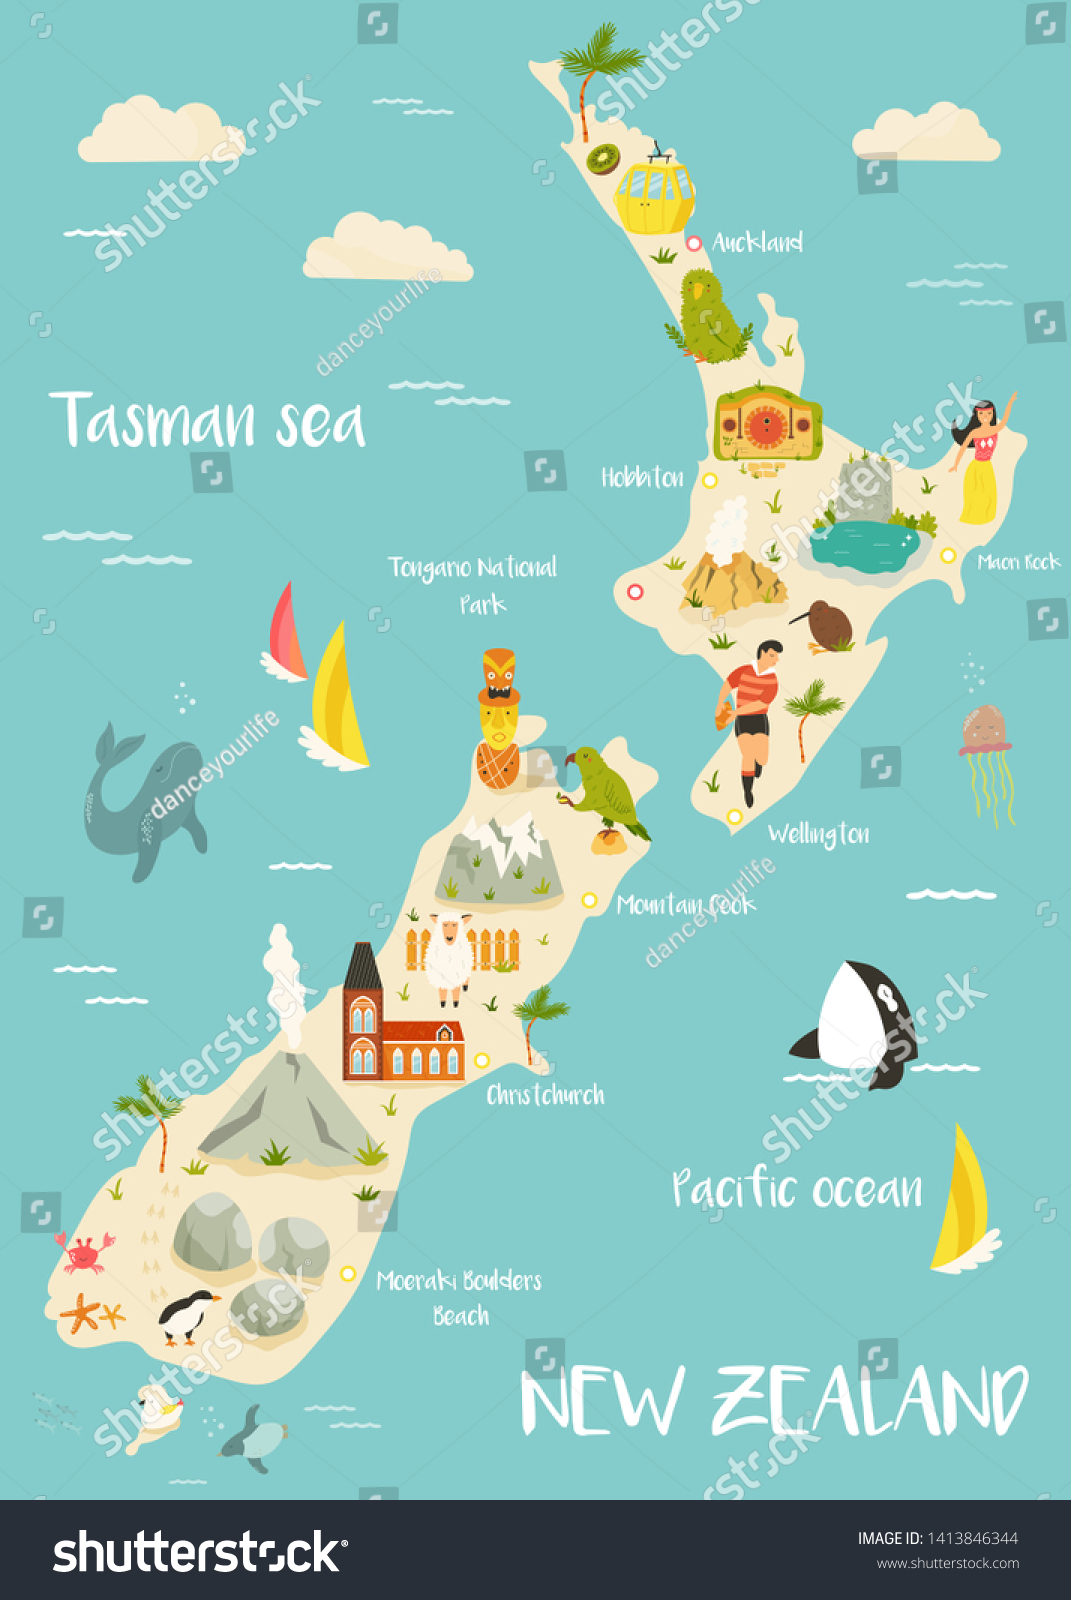 ニュージーランドのイラスト地図 で 有名な目印 動物 シンボルが描かれています プリント 観光ポスター 旅行ガイド お祭りなど のベクター画像素材 ロイヤリティフリー